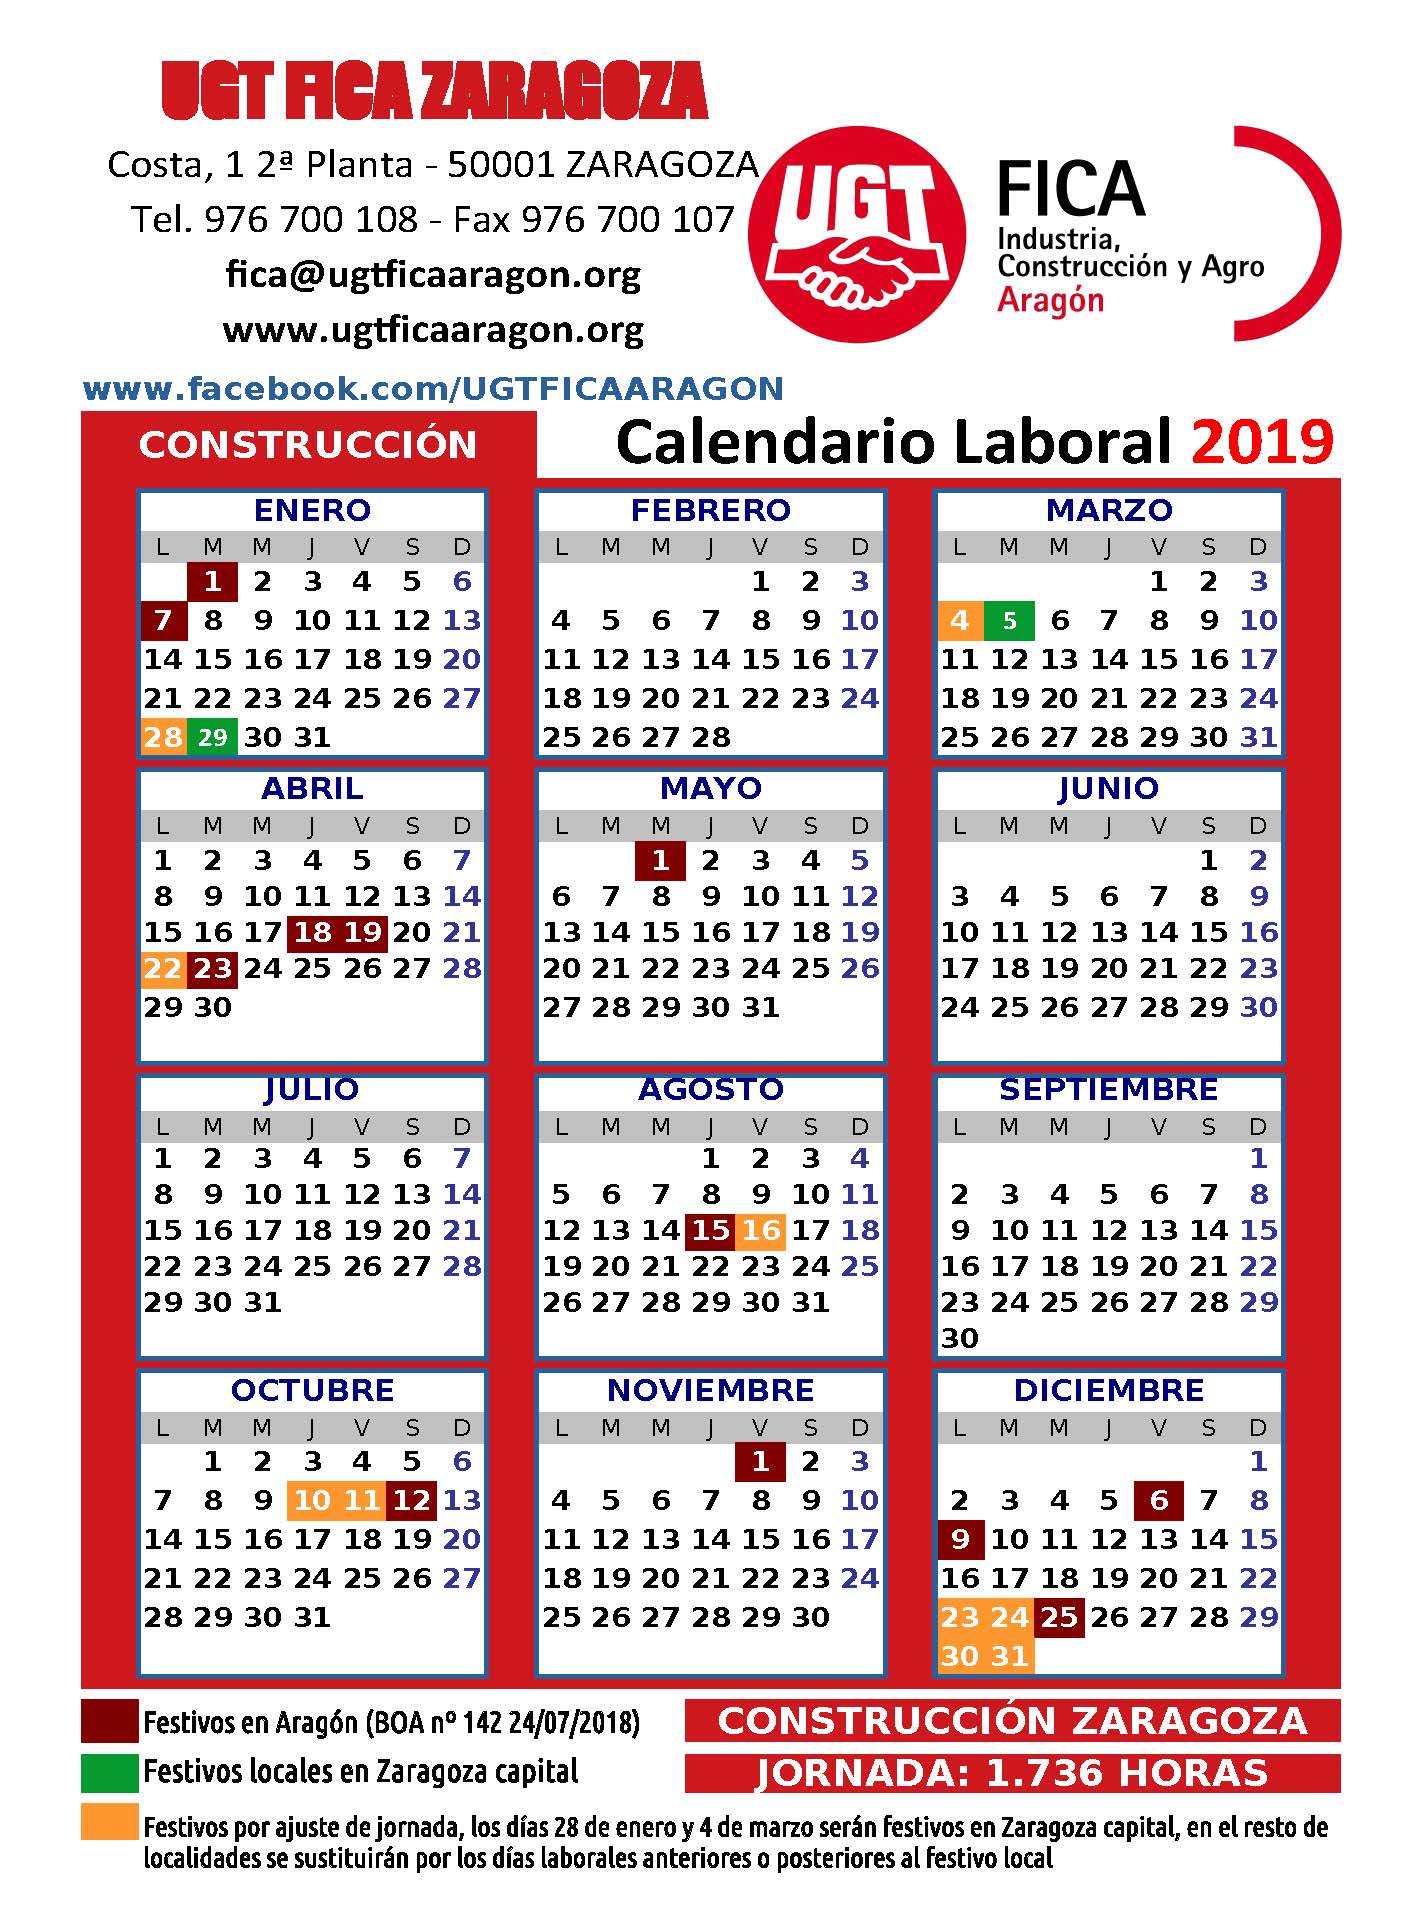 Calendario Construccion Zaragoza 2019.jpg